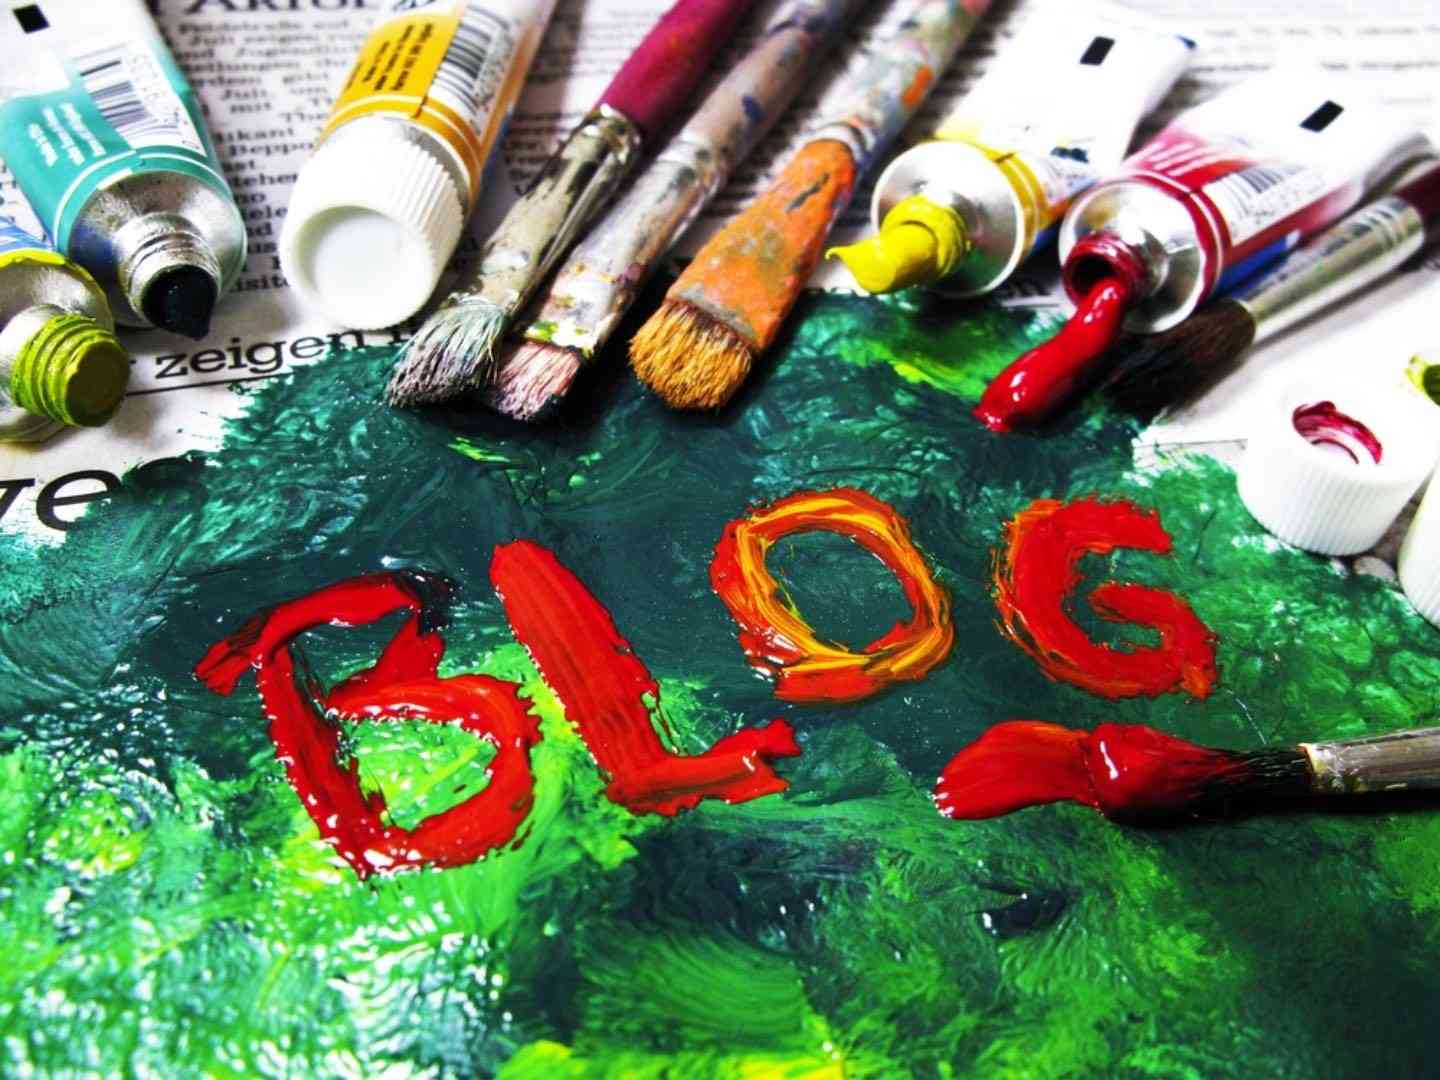 هنگام تعیین استراتژی وبلاگ و وبلاگ نویسی چه نکاتی را باید رعایت کنیم؟